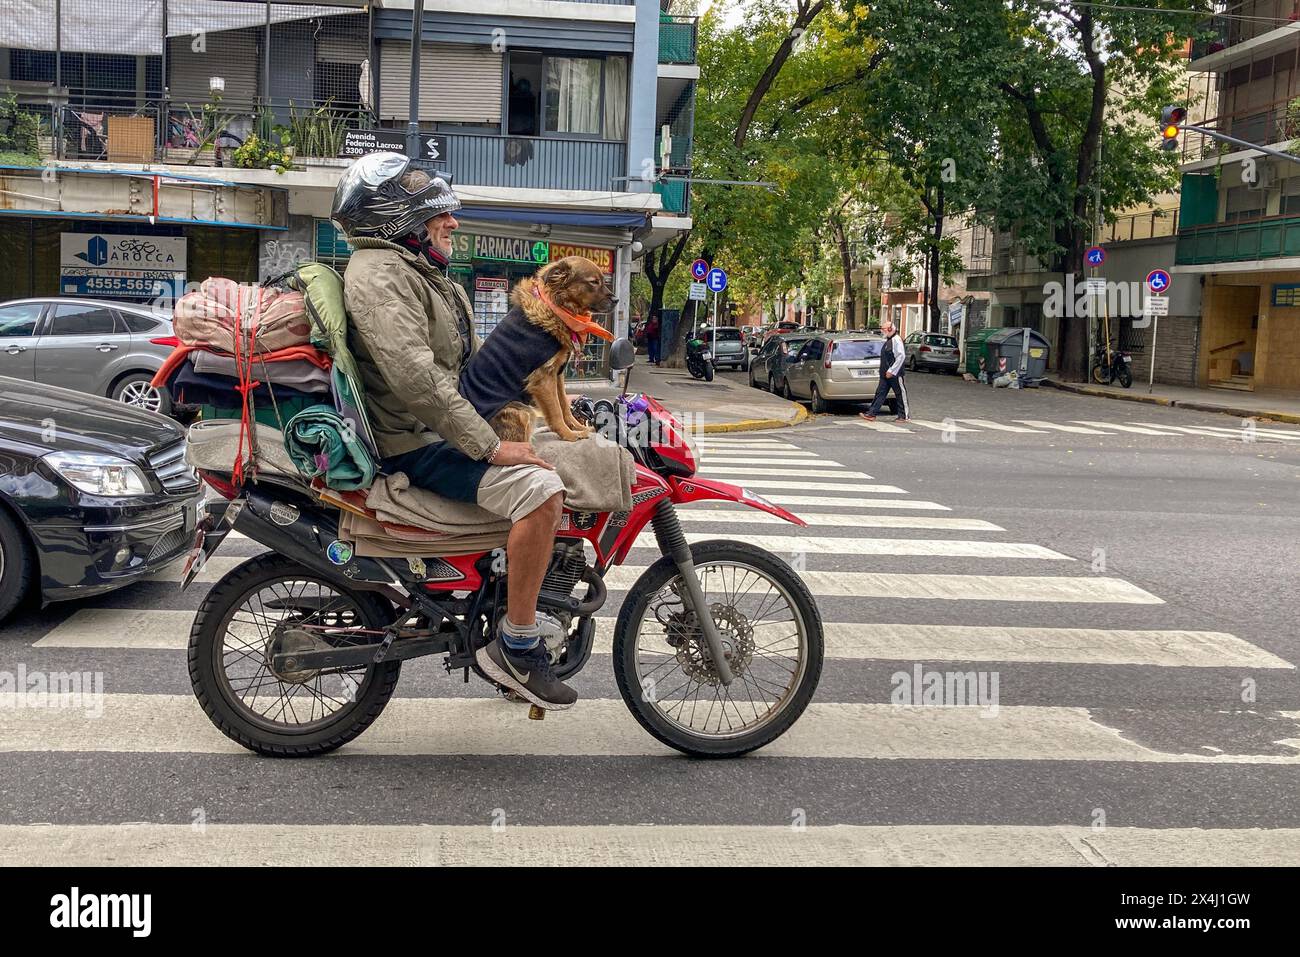 Lustige Straßenszene, Hund auf einem Motorrad, Buenos Aires, Argentinien Stockfoto